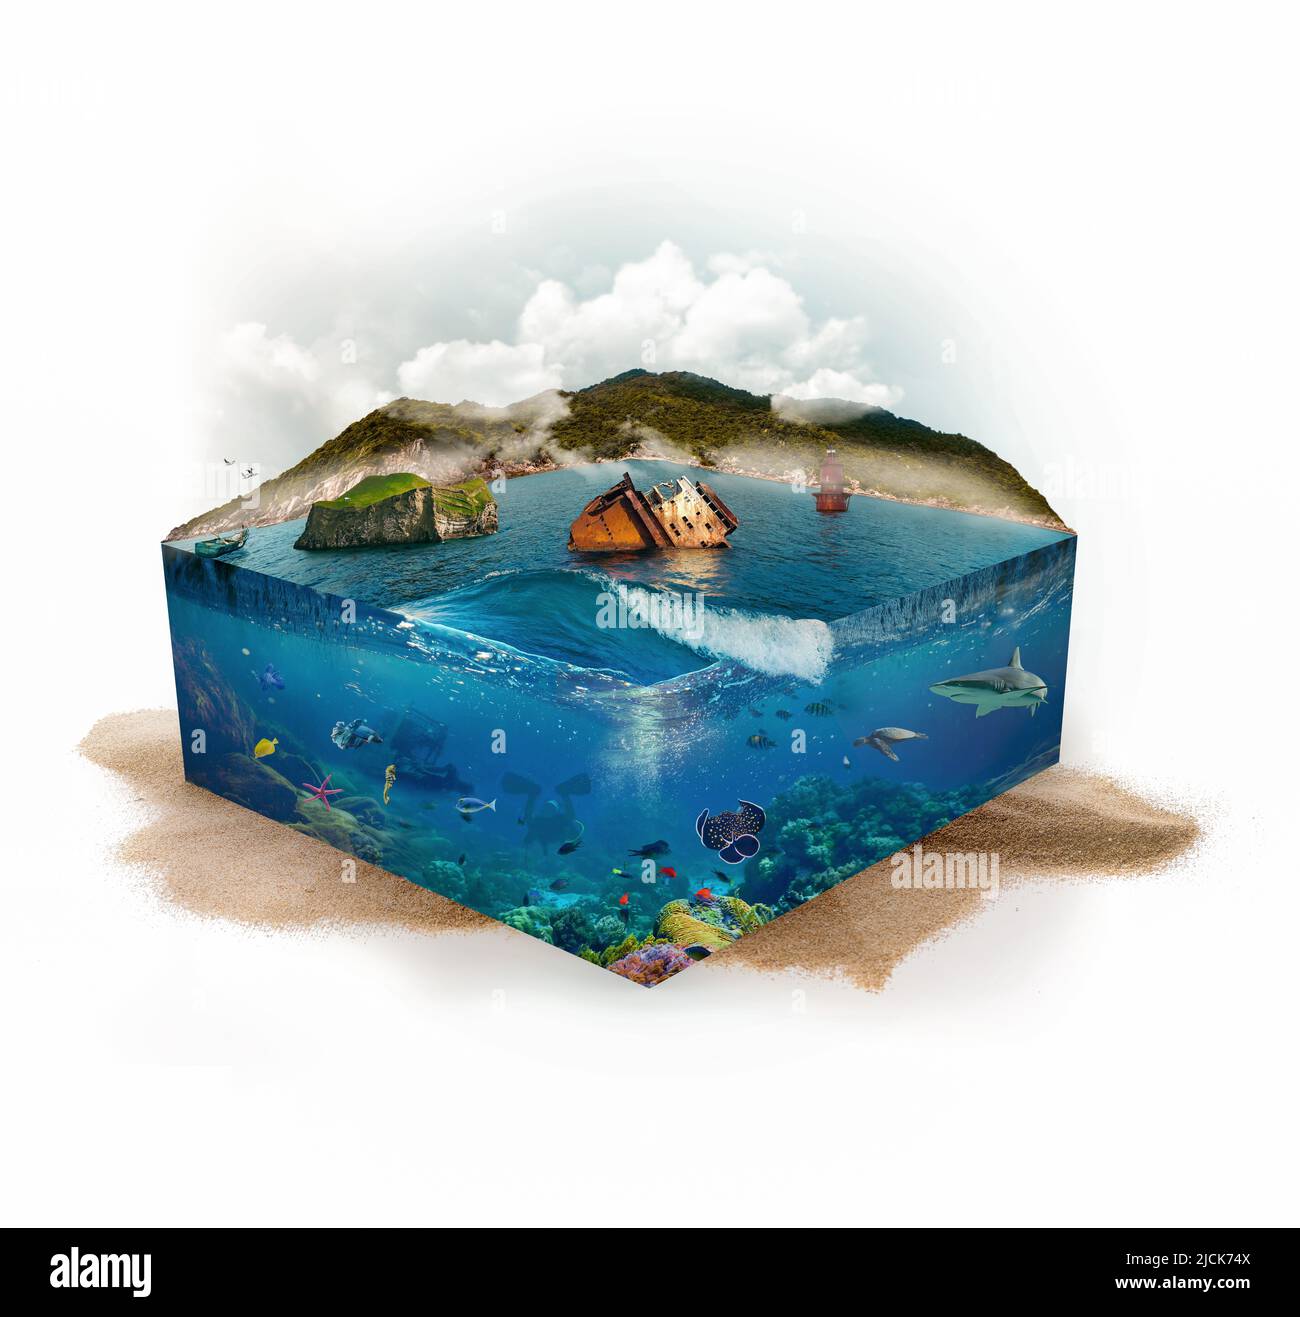 Unter Wasser und über Wasser. Berg, Boot, Fisch Leuchtturm, Wal, Stachelrochen, Schildkröte, Seesterne. Unterwasserwelt und Oberflächenleben. 3D Abbildung. Stockfoto